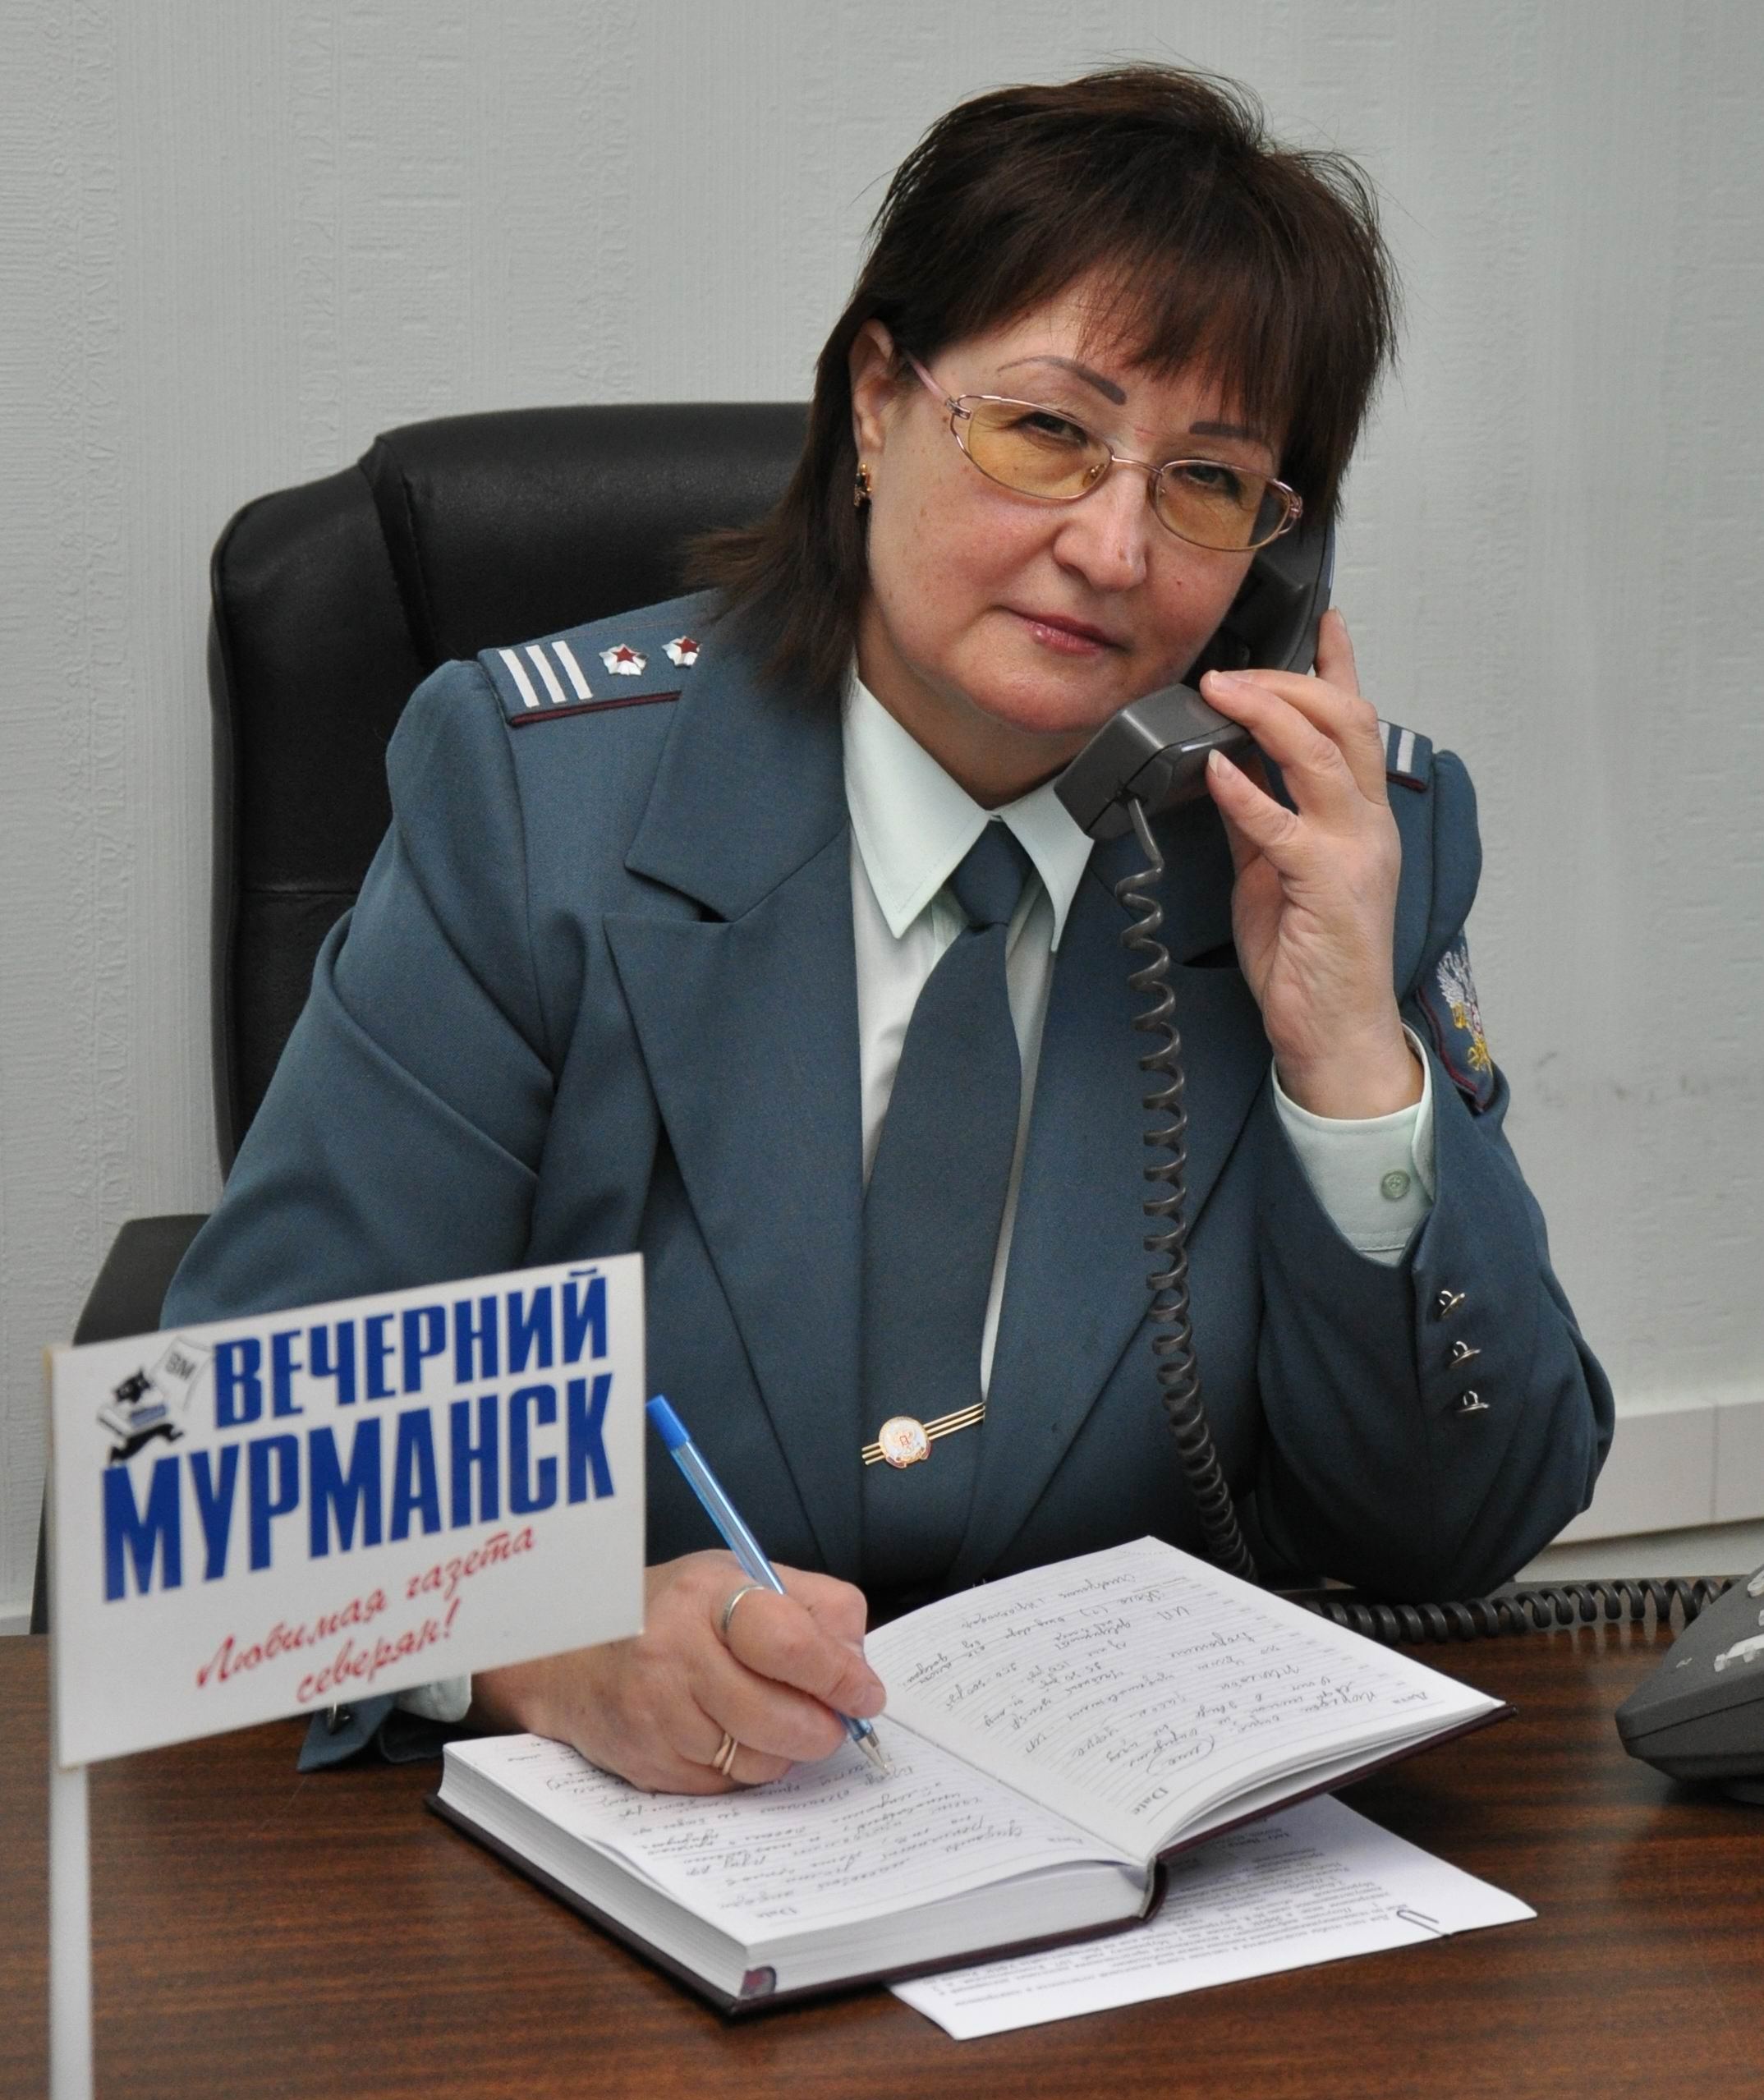 Сайт налоговой мурманска. Налоговая Мурманск. ИФНС Мурманск время работы.